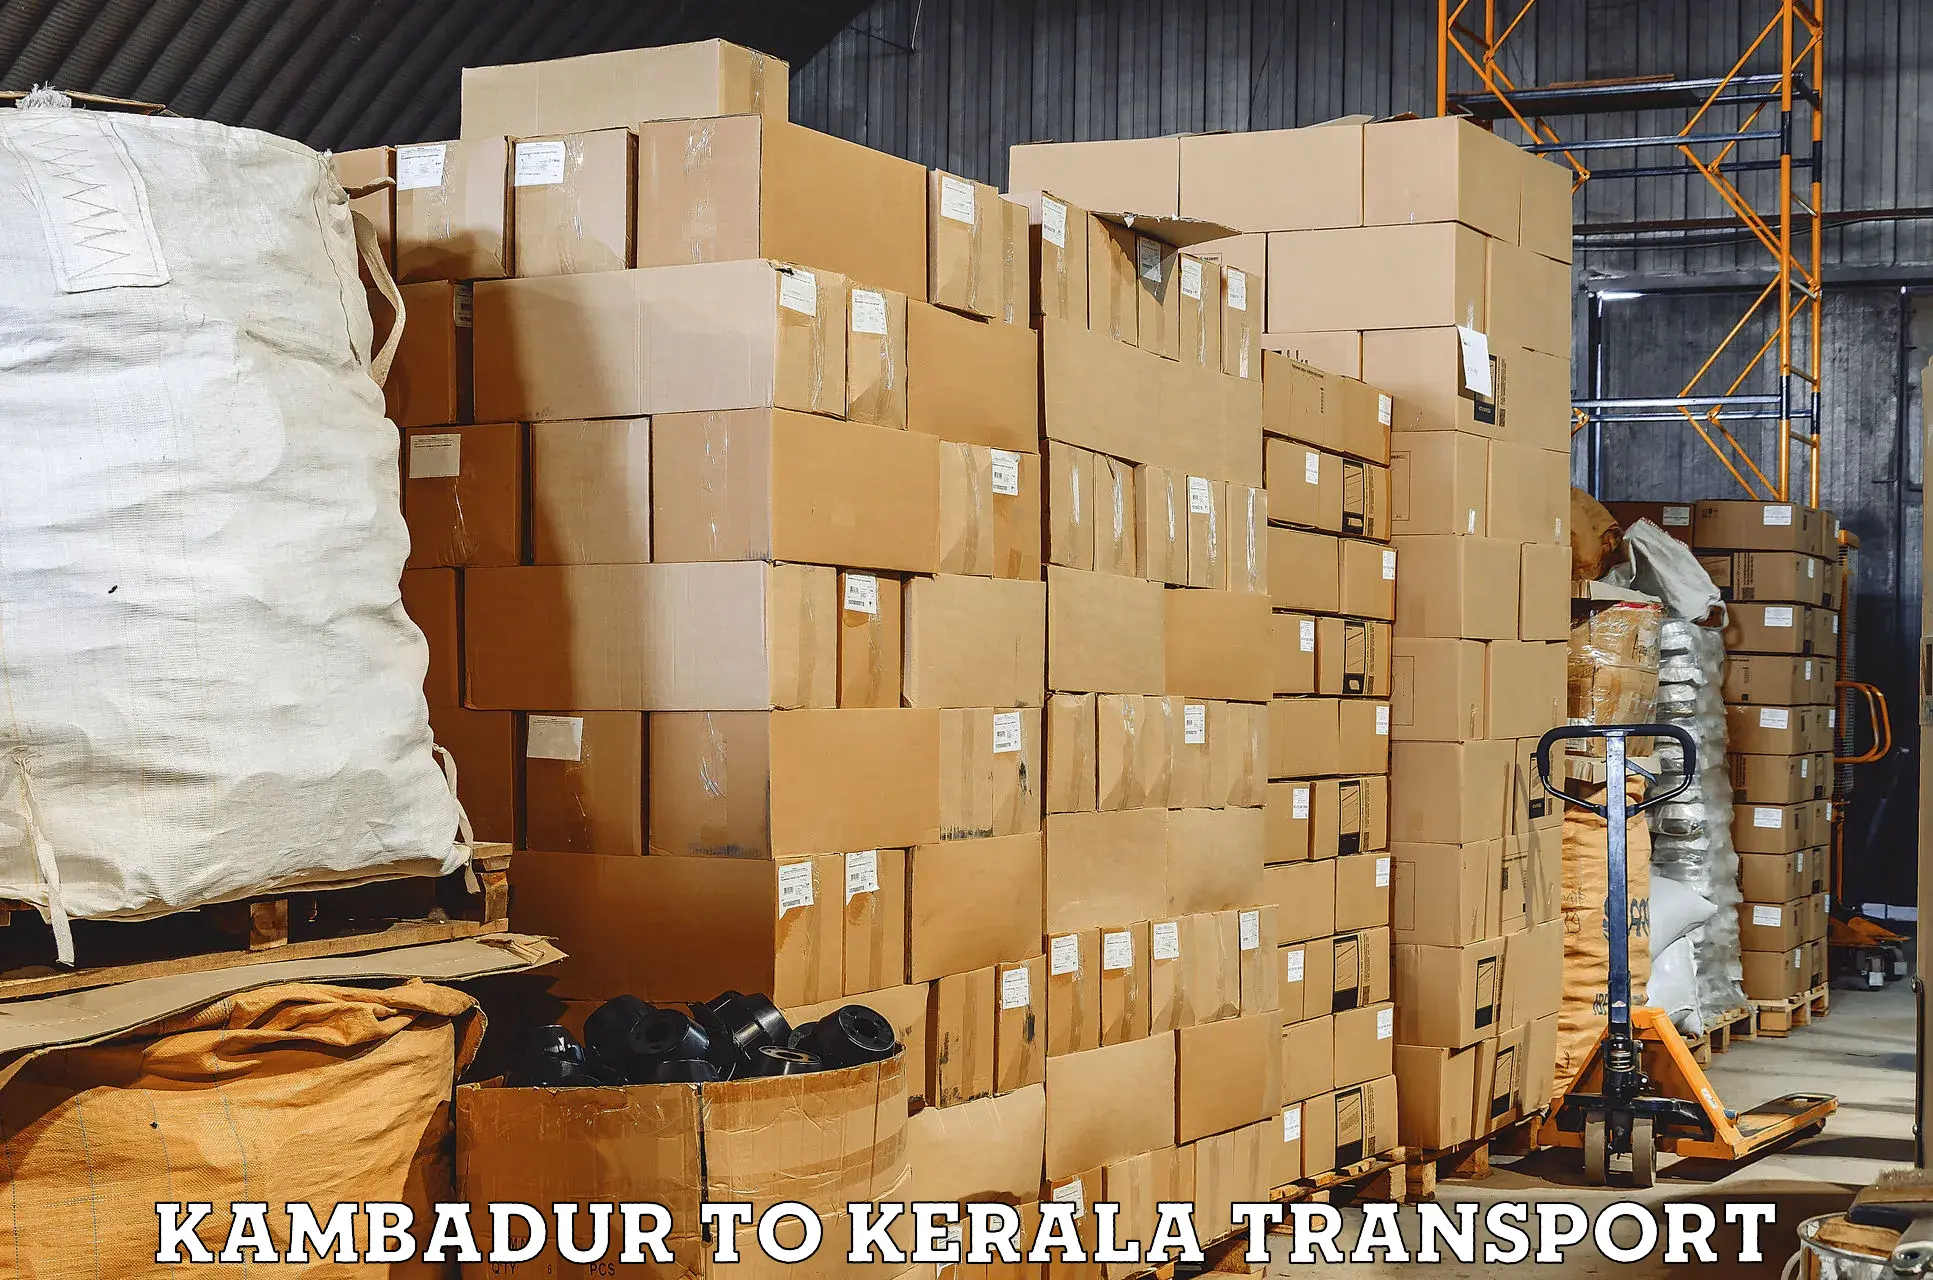 Vehicle transport services Kambadur to Kuchi